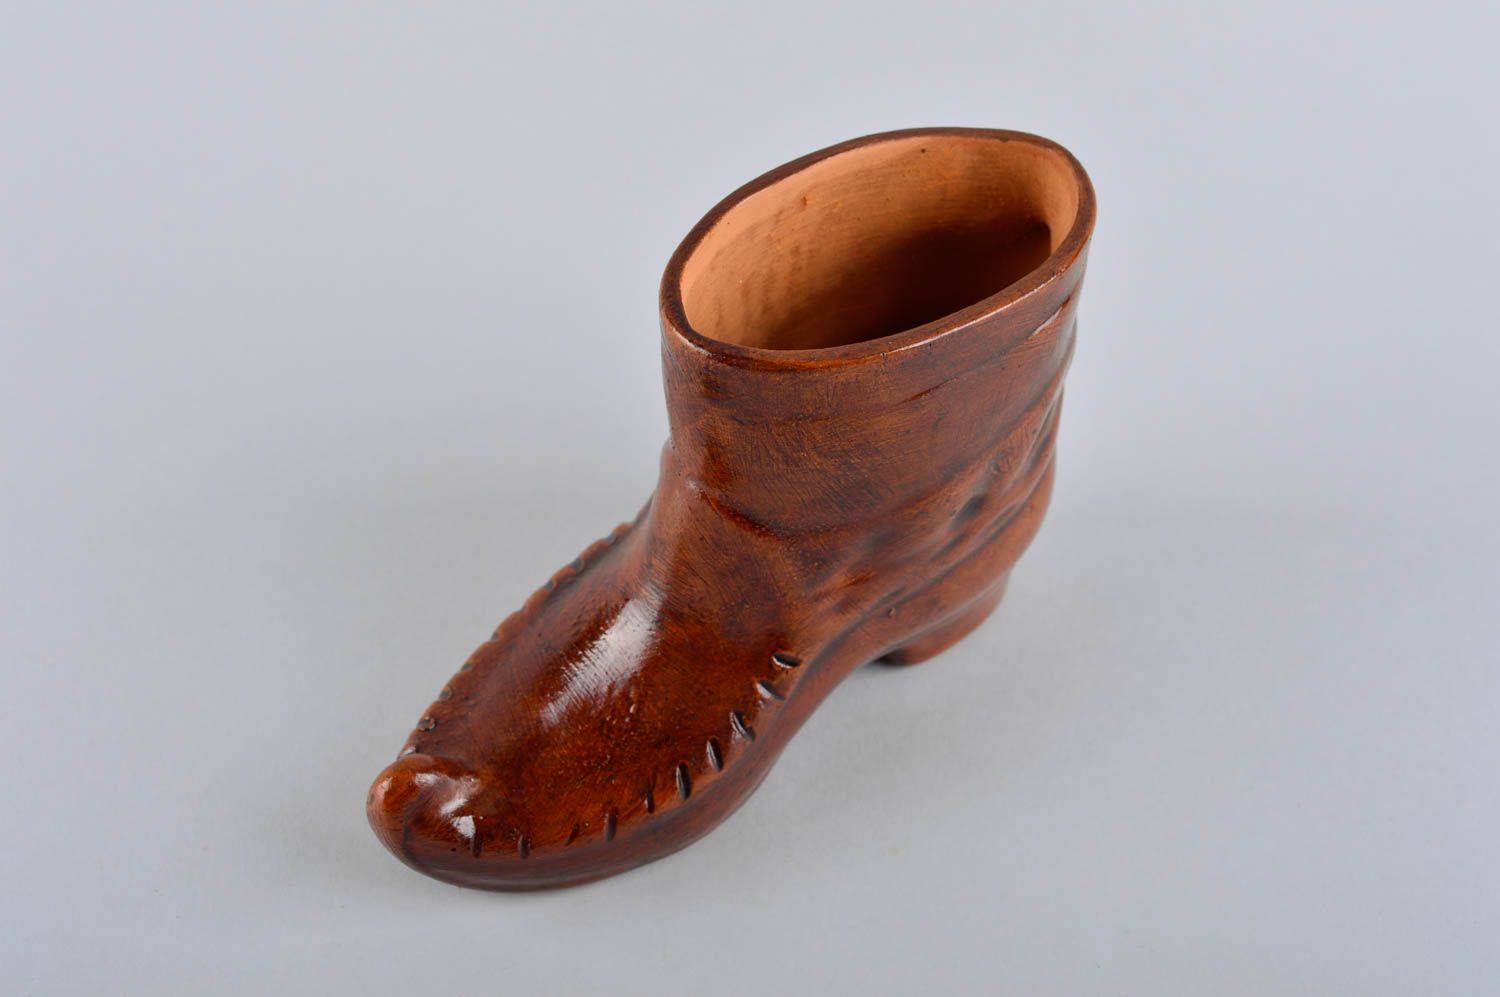 8 oz decorative boot shape ceramic brown vessel for home décor 0,5 lb photo 2